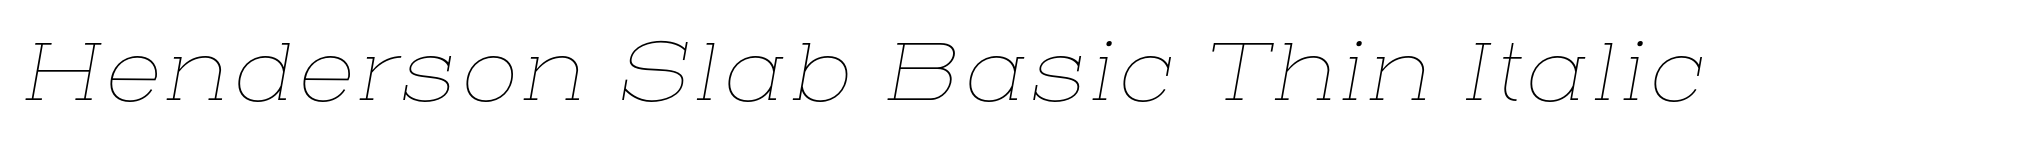 Henderson Slab Basic Thin Italic image